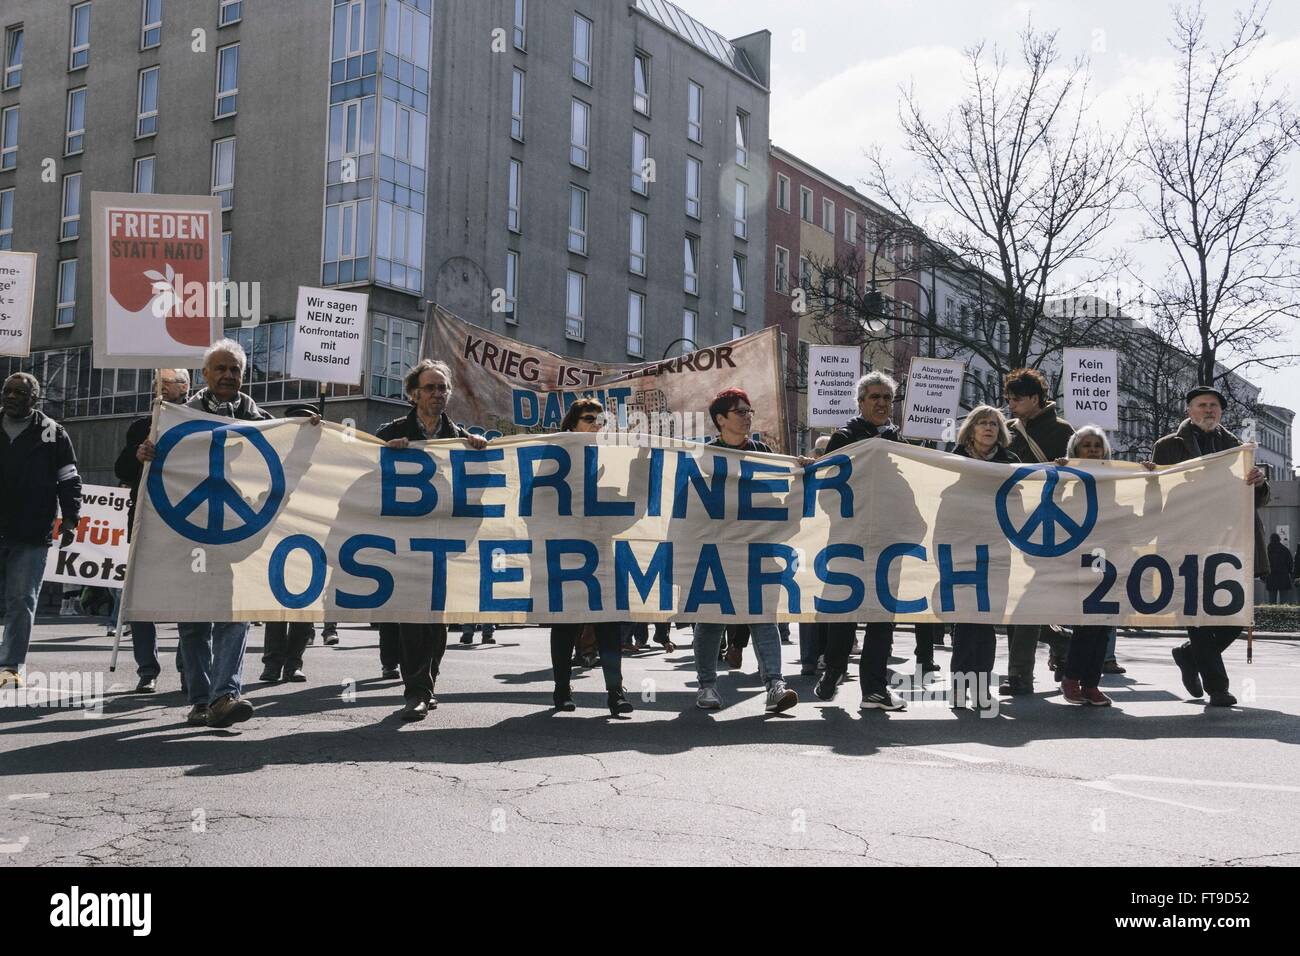 Berlin, Allemagne. 26 mars, 2016. Les manifestants au cours de l'assemblée annuelle tenue à Berlin mars Pâques sous le slogan "La guerre est la terreur !". Le rassemblement annuel est principalement organisé par les pacifistes, antimilitaristes-groupes et du mouvement de paix de l'Allemagne. Crédit : Jan Scheunert/ZUMA/Alamy Fil Live News Banque D'Images